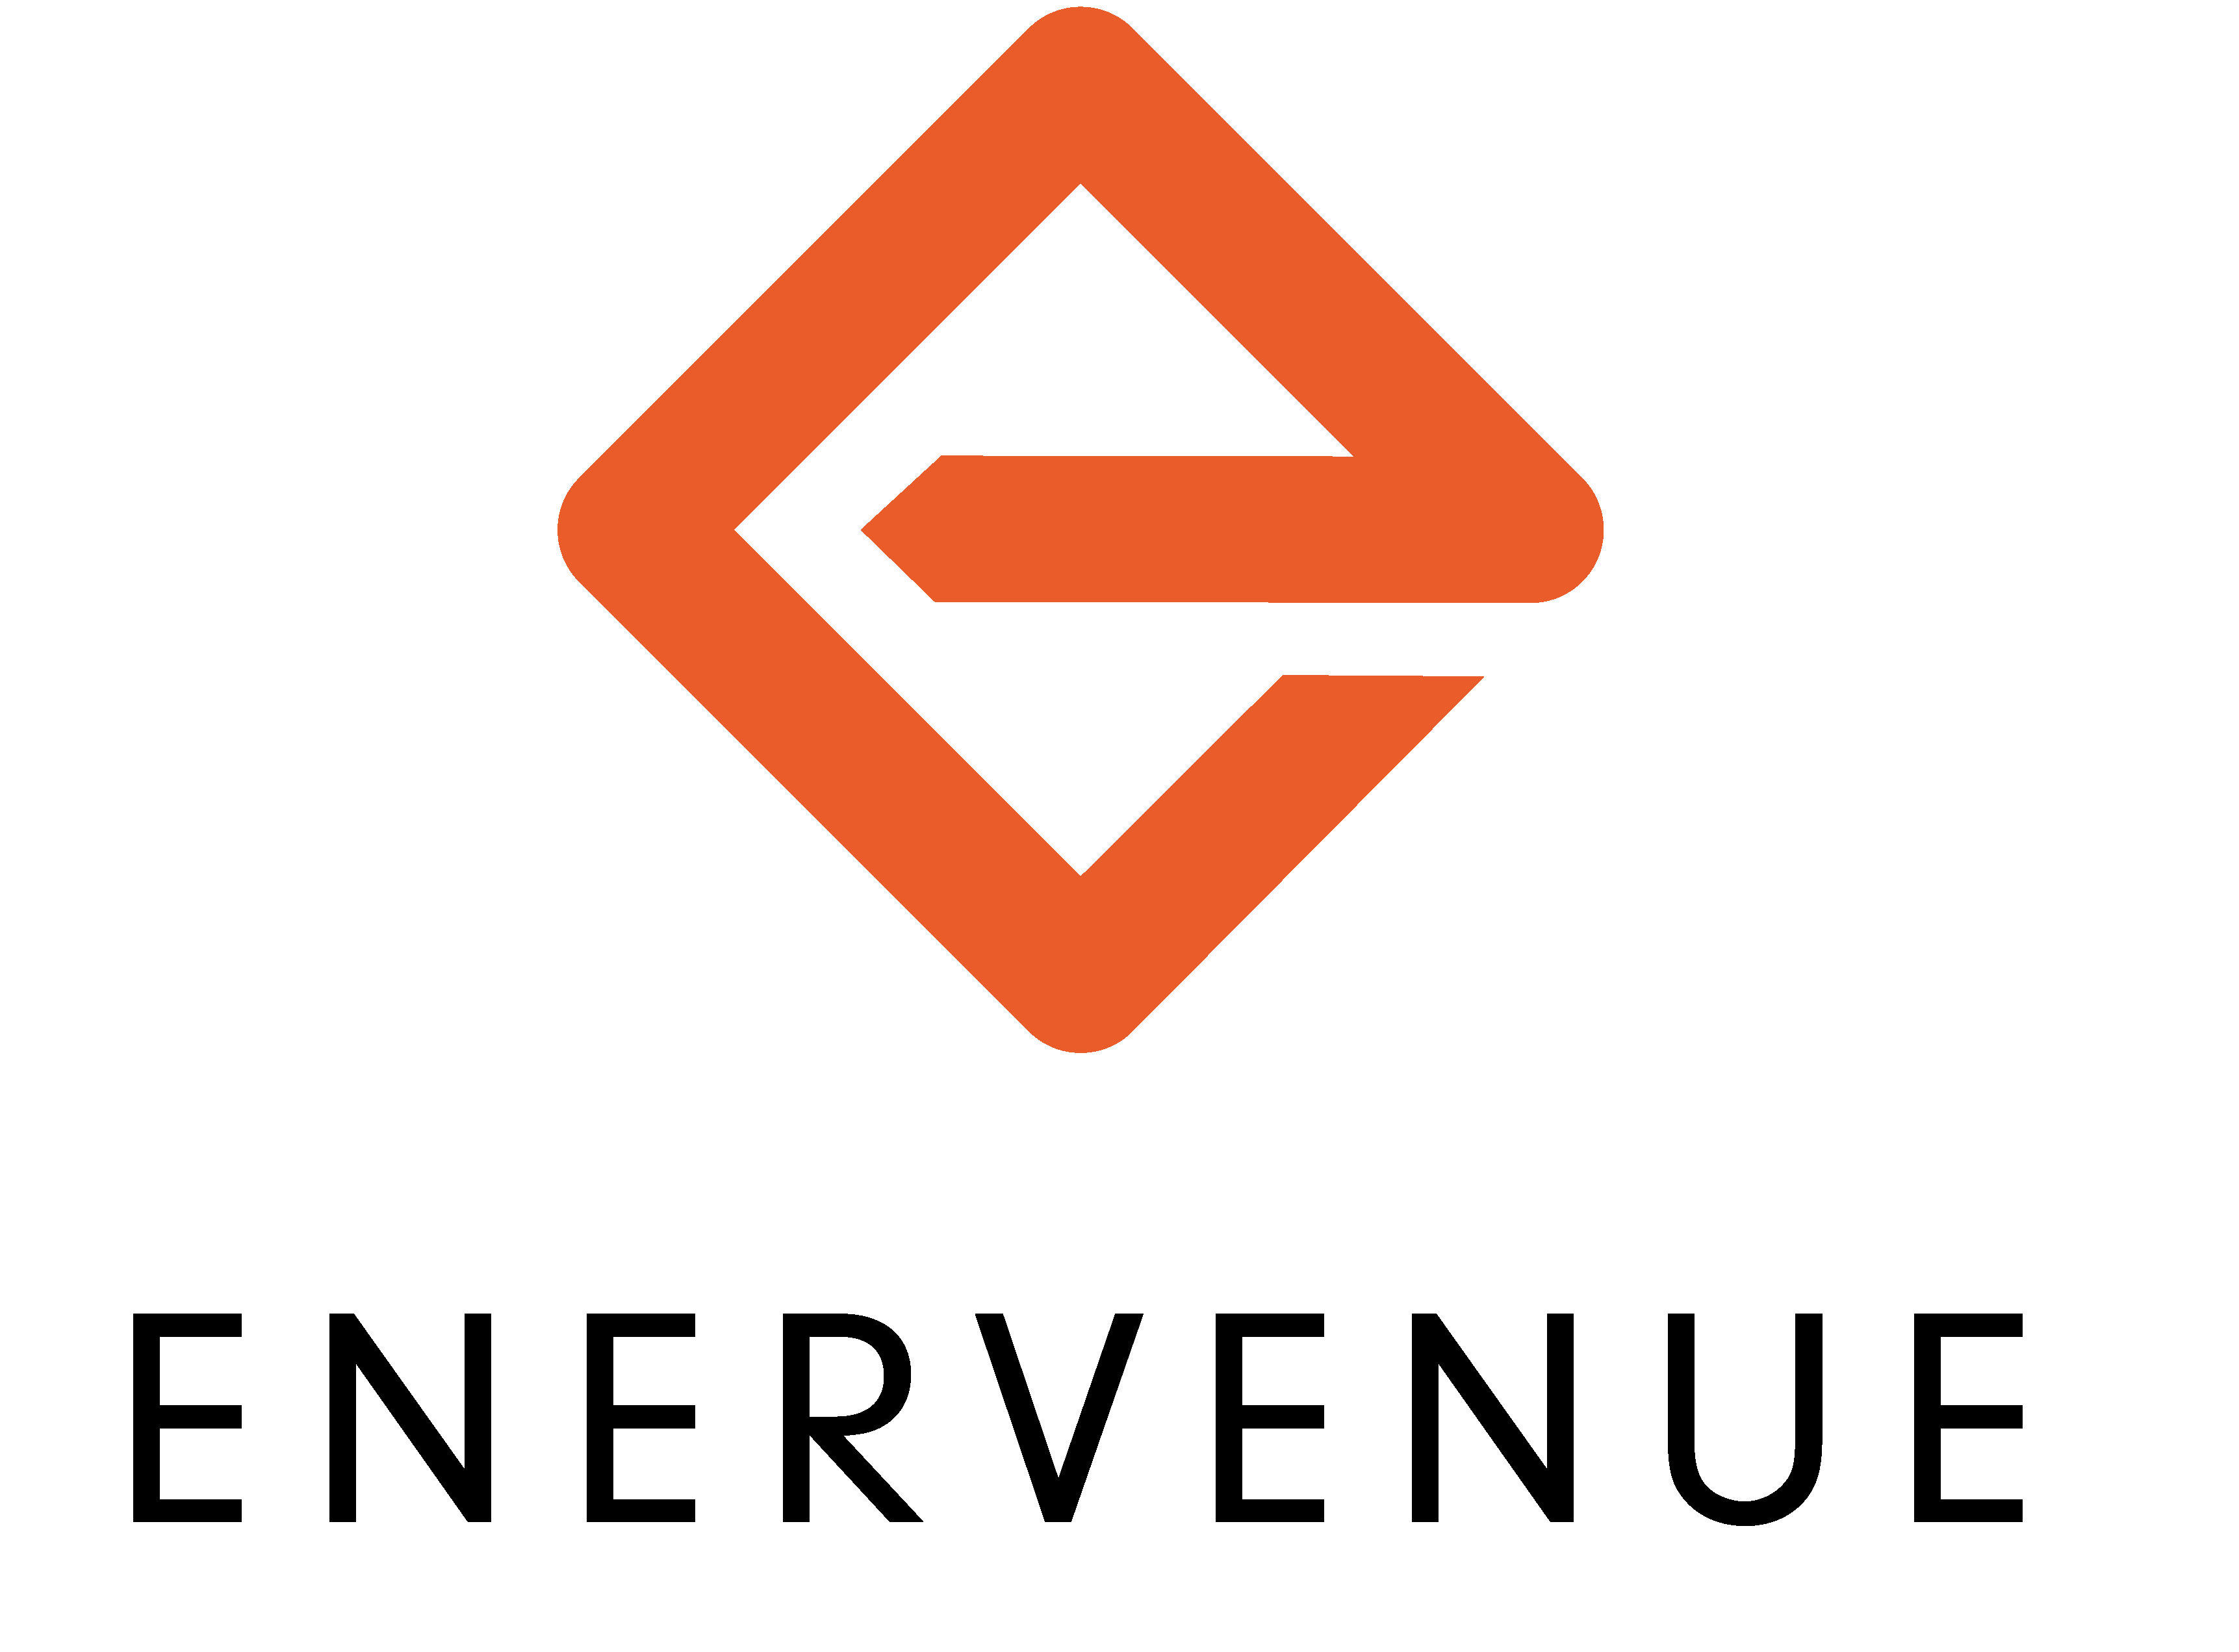 EnerVenue - Logo.png